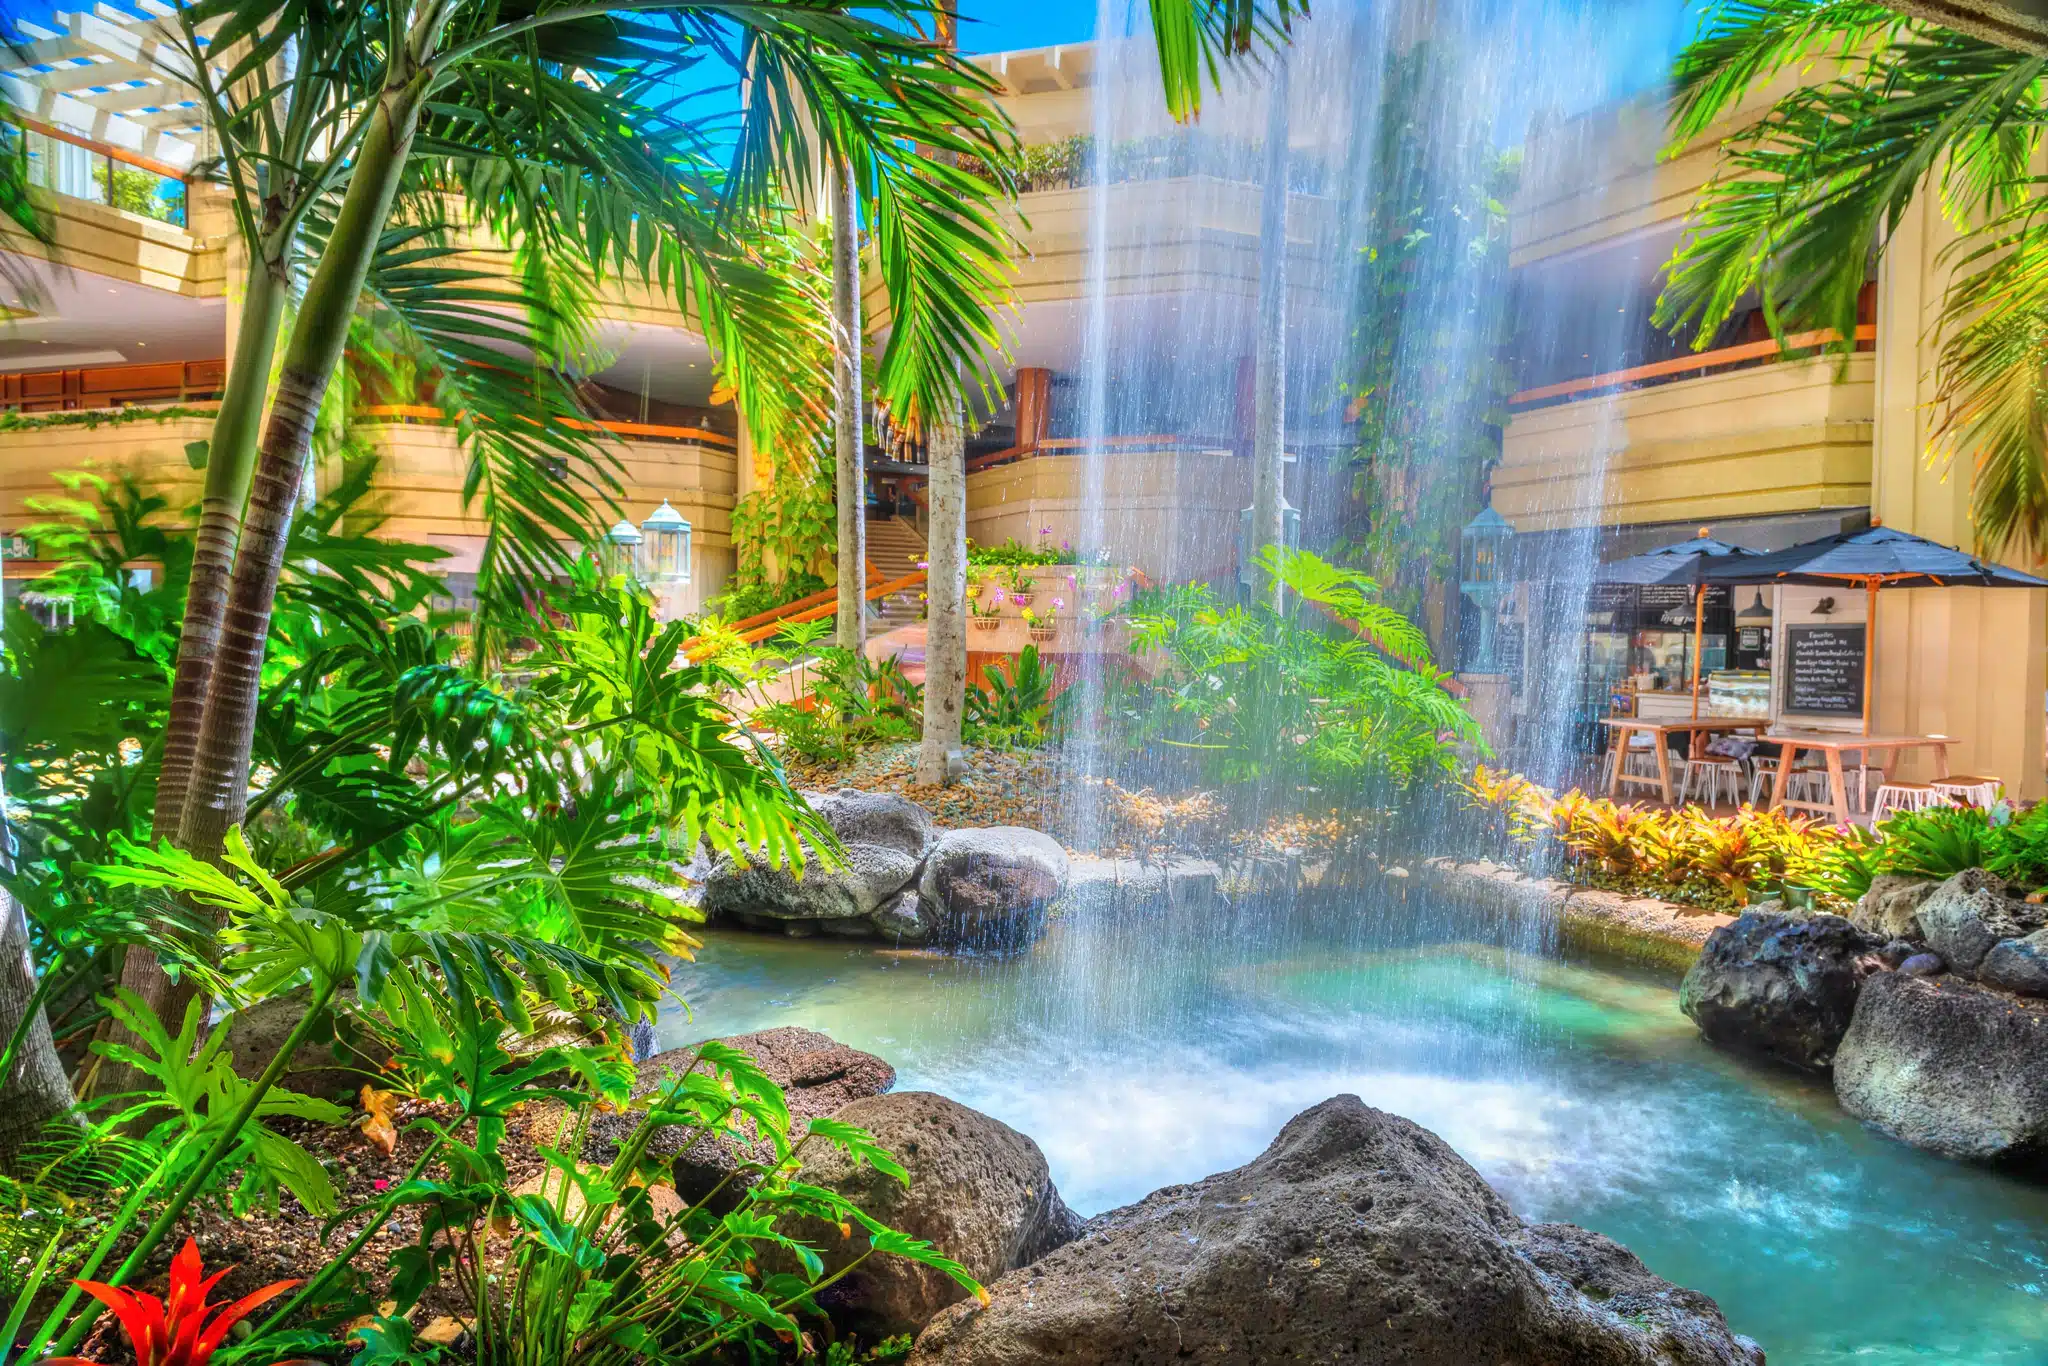 Hyatt Regency Waikiki Beach Resort & Spa is a Hotel located in the city of Honolulu on Oahu, Hawaii